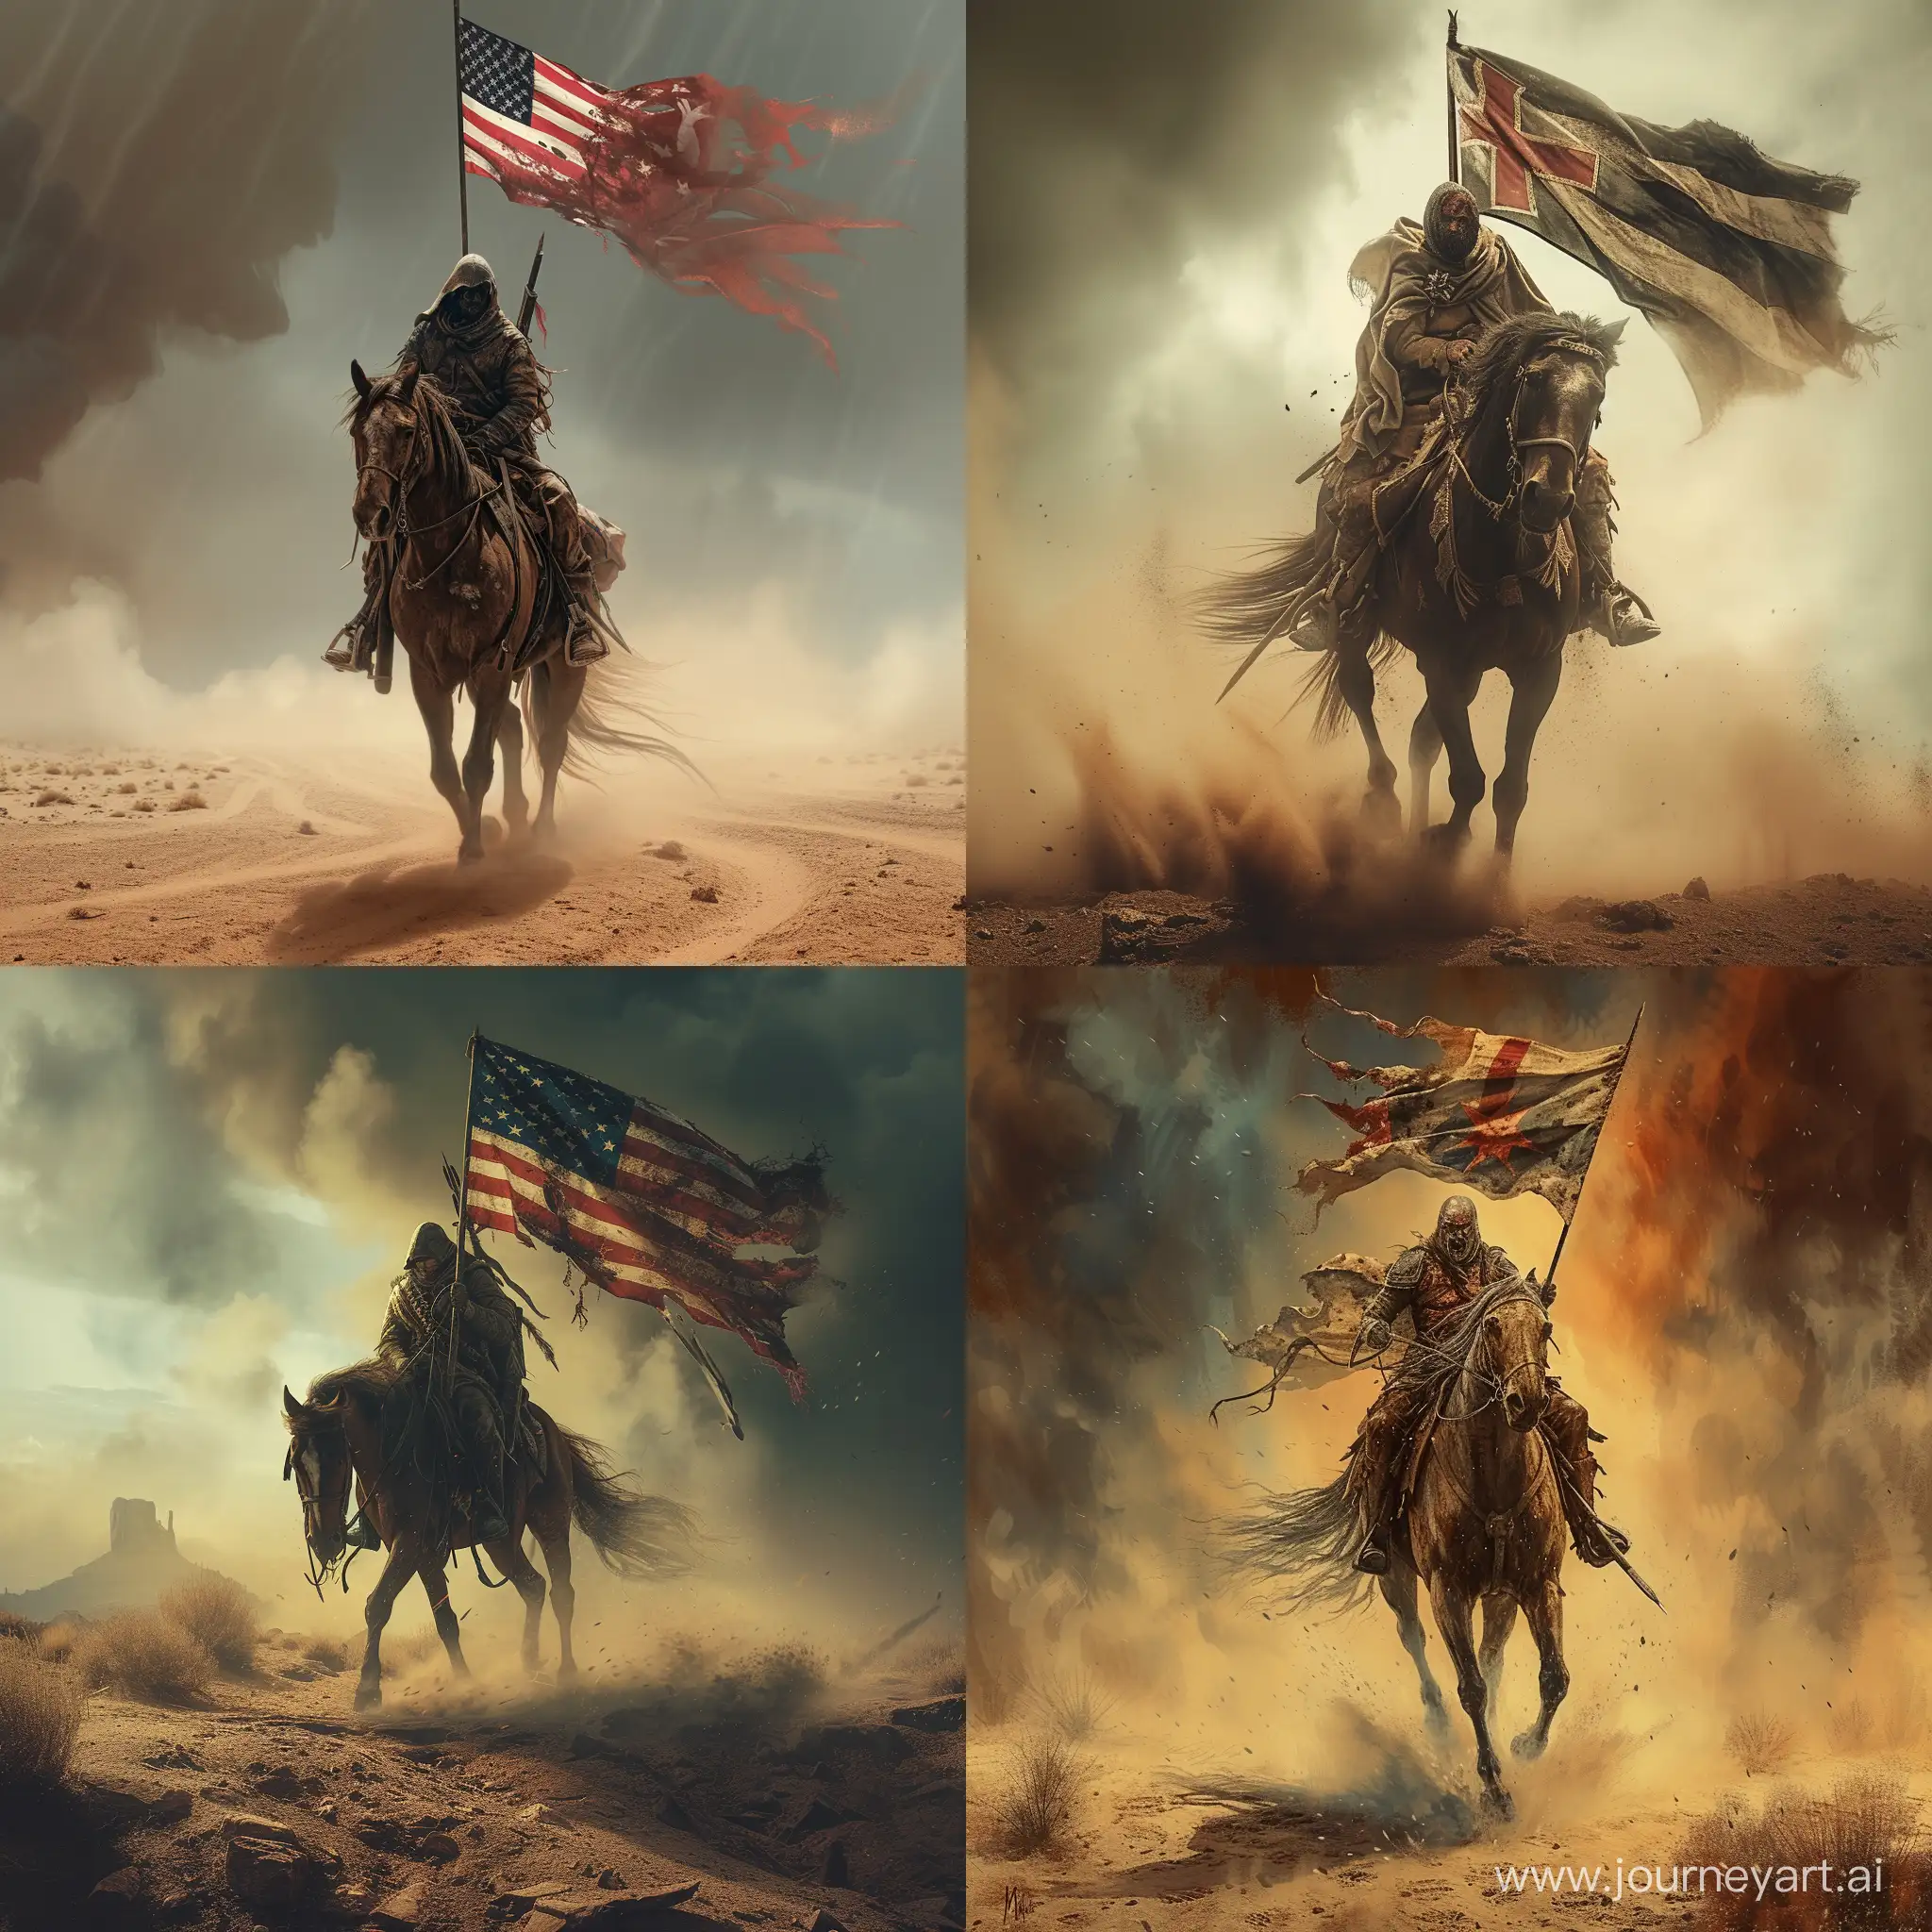 дует сильный ветер, конь напряженно идет вперед, на коне раненый воин с флагом своей страны